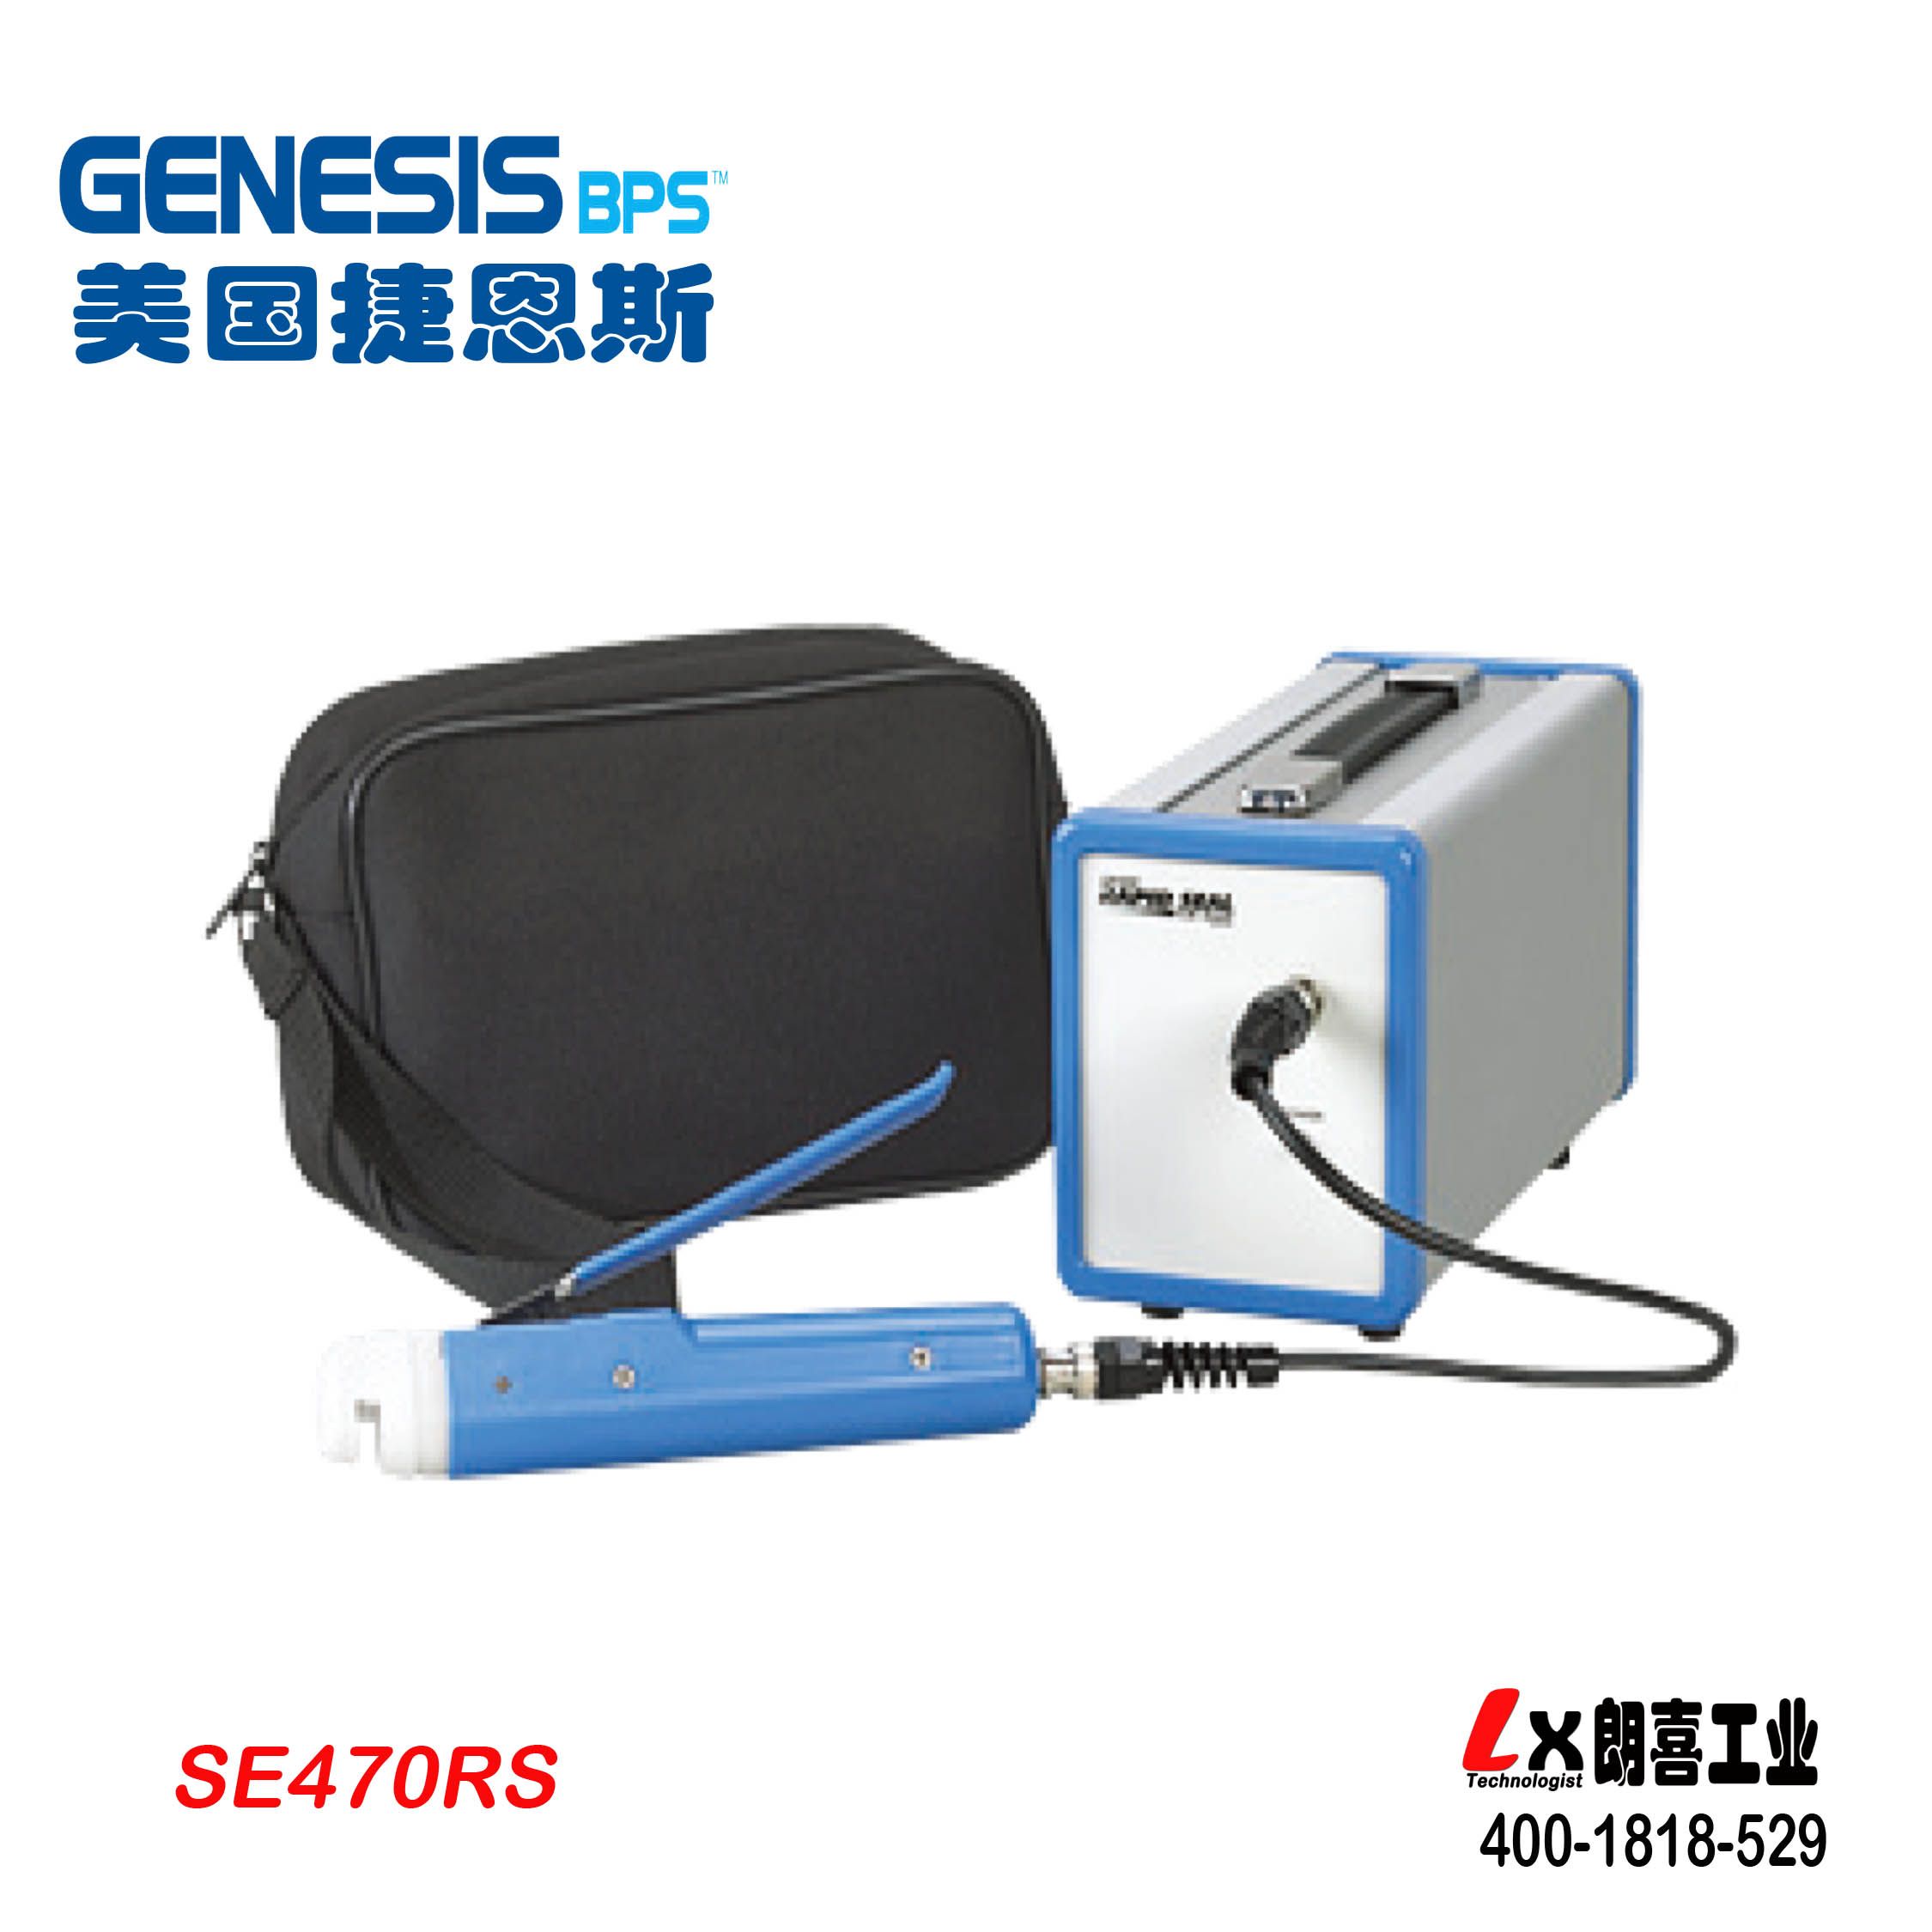  美国GenesisBPS血袋热合仪SE470RS 